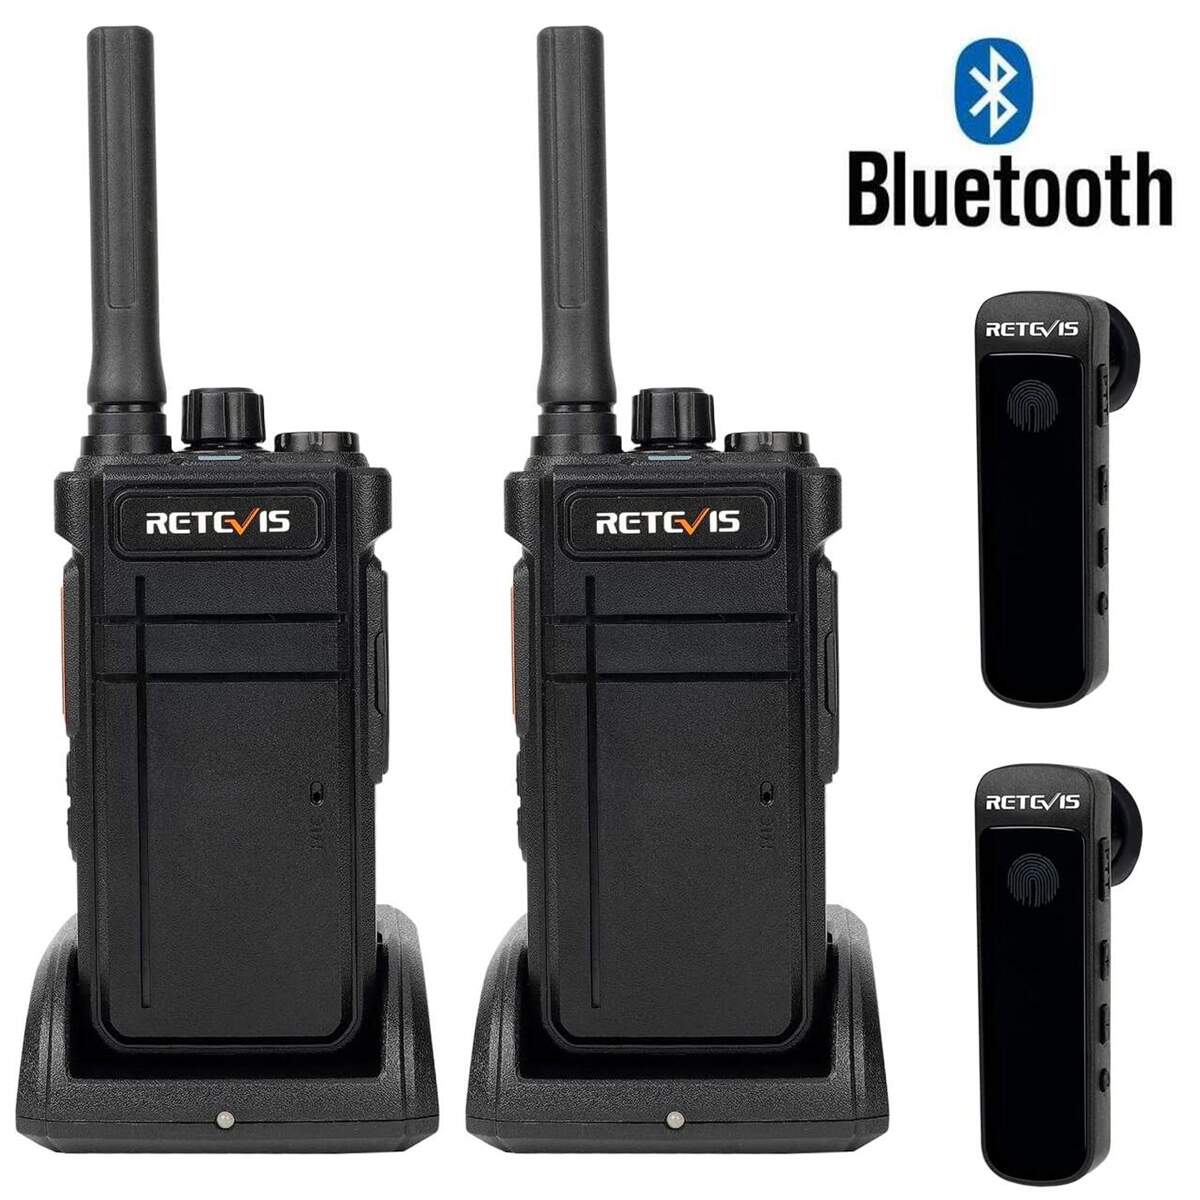 Pack Retevis RB637 2.0 Bluetooth + 2 oortjes gratis image